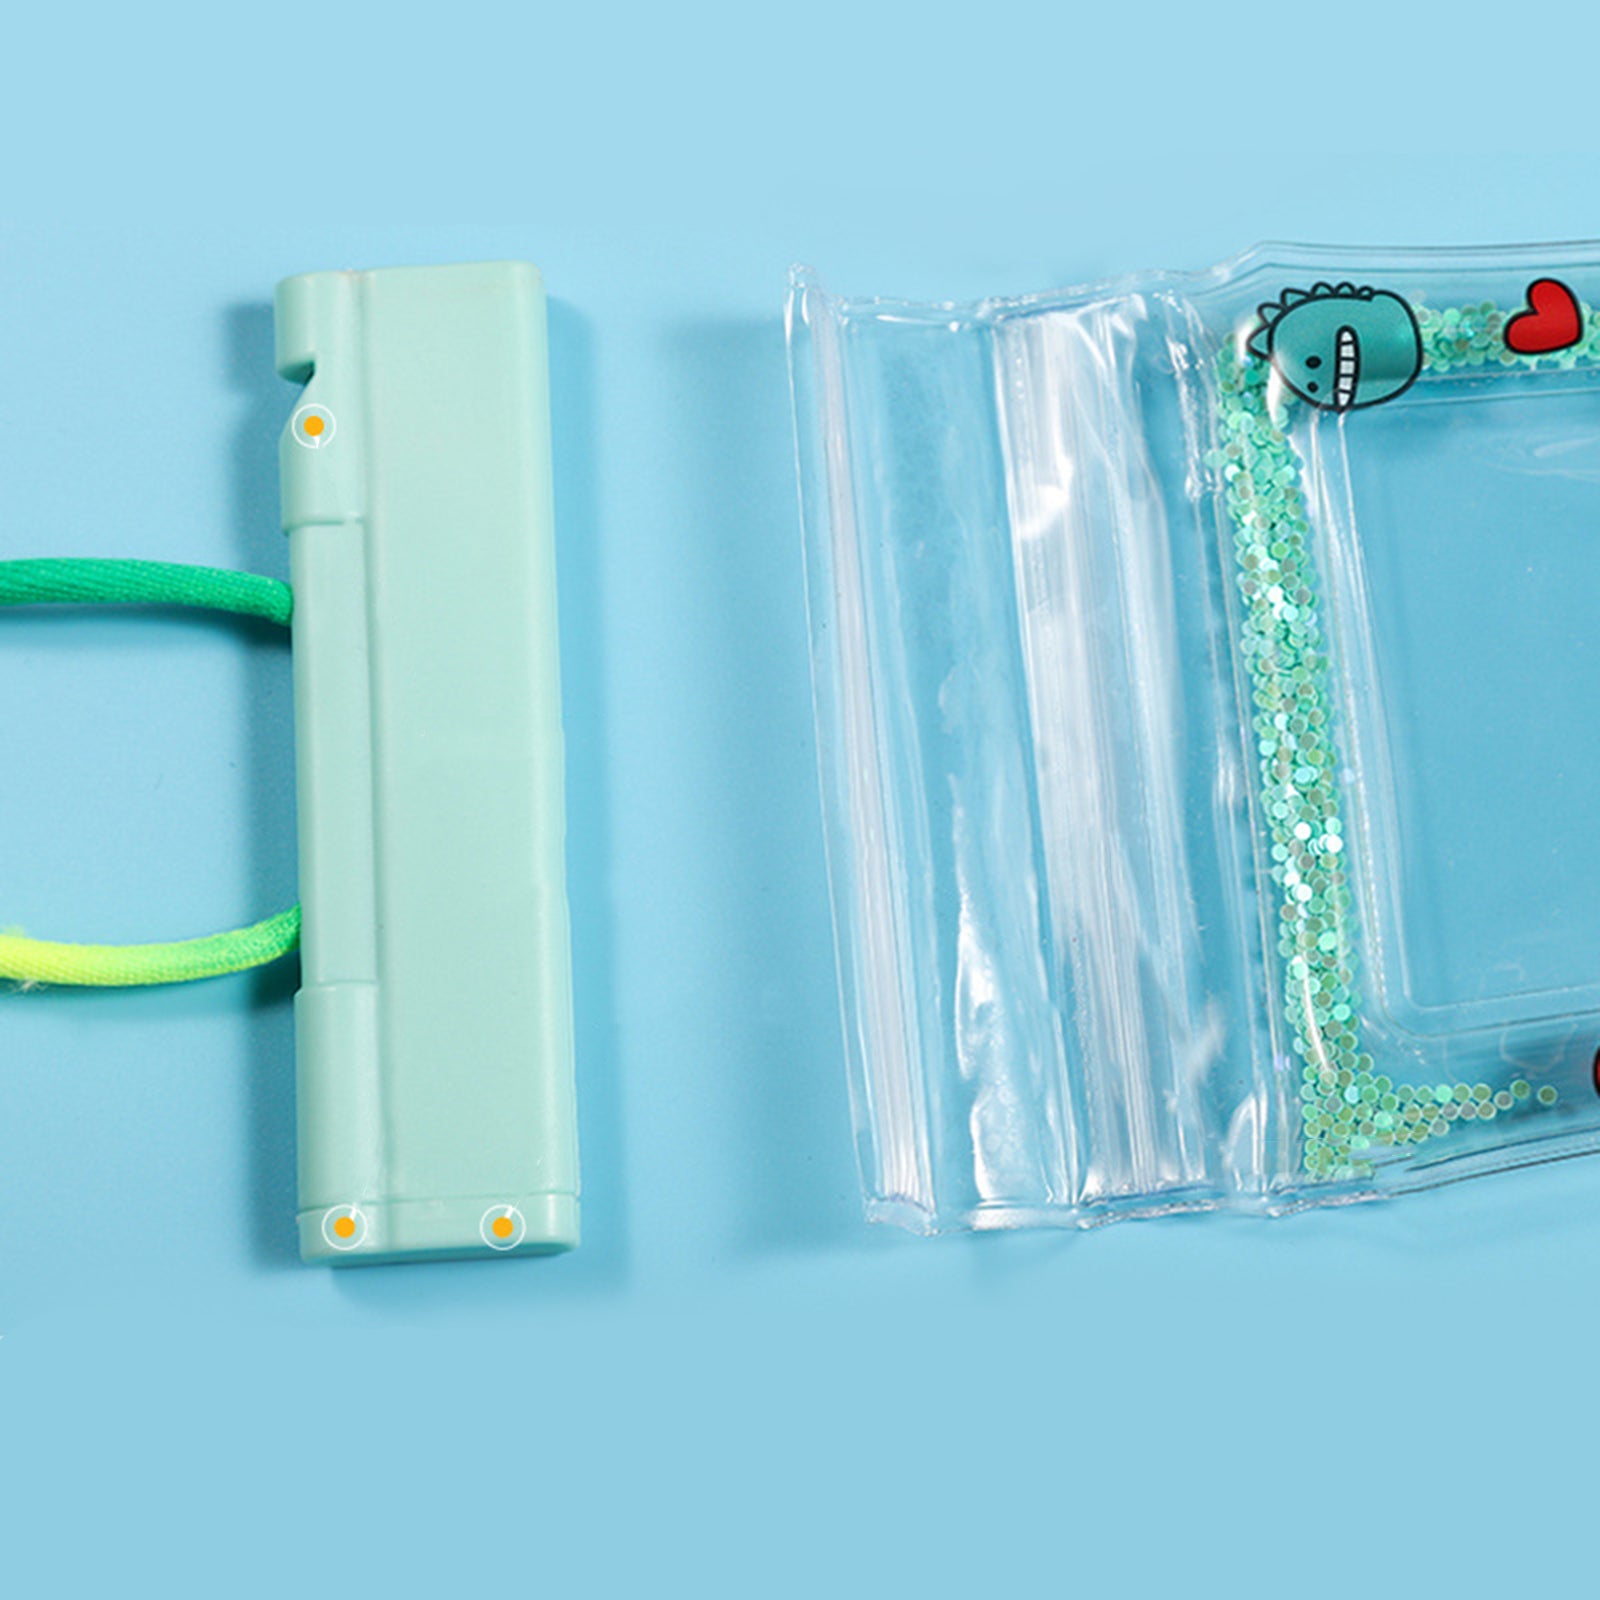 PVC Waterproof Phone Case Cellphone Dry Bag Phones Holder Orange Debris